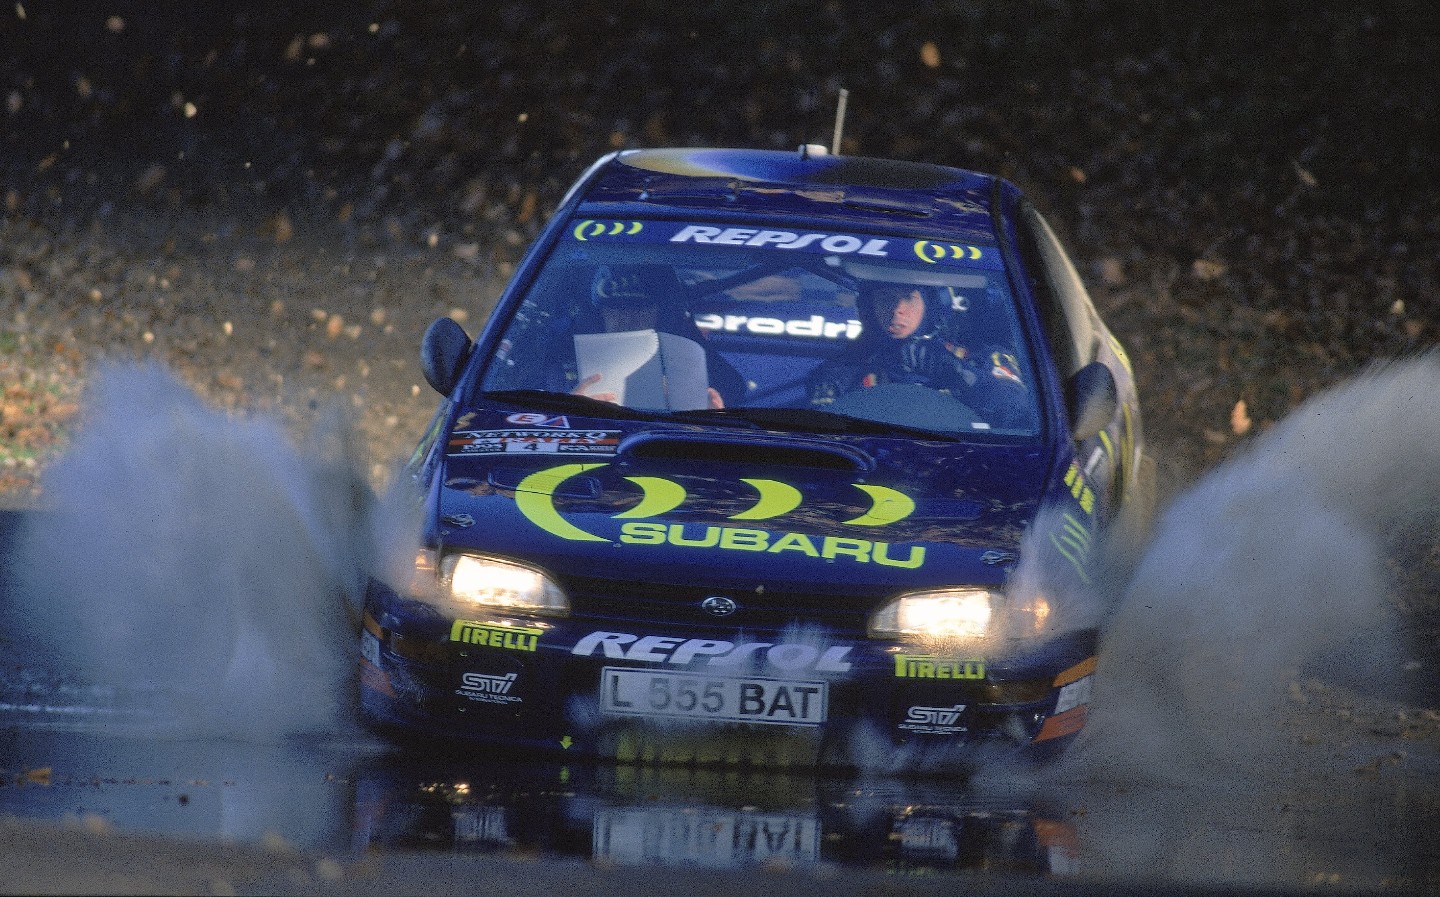 Colin McRae 1995 Subaru rally car